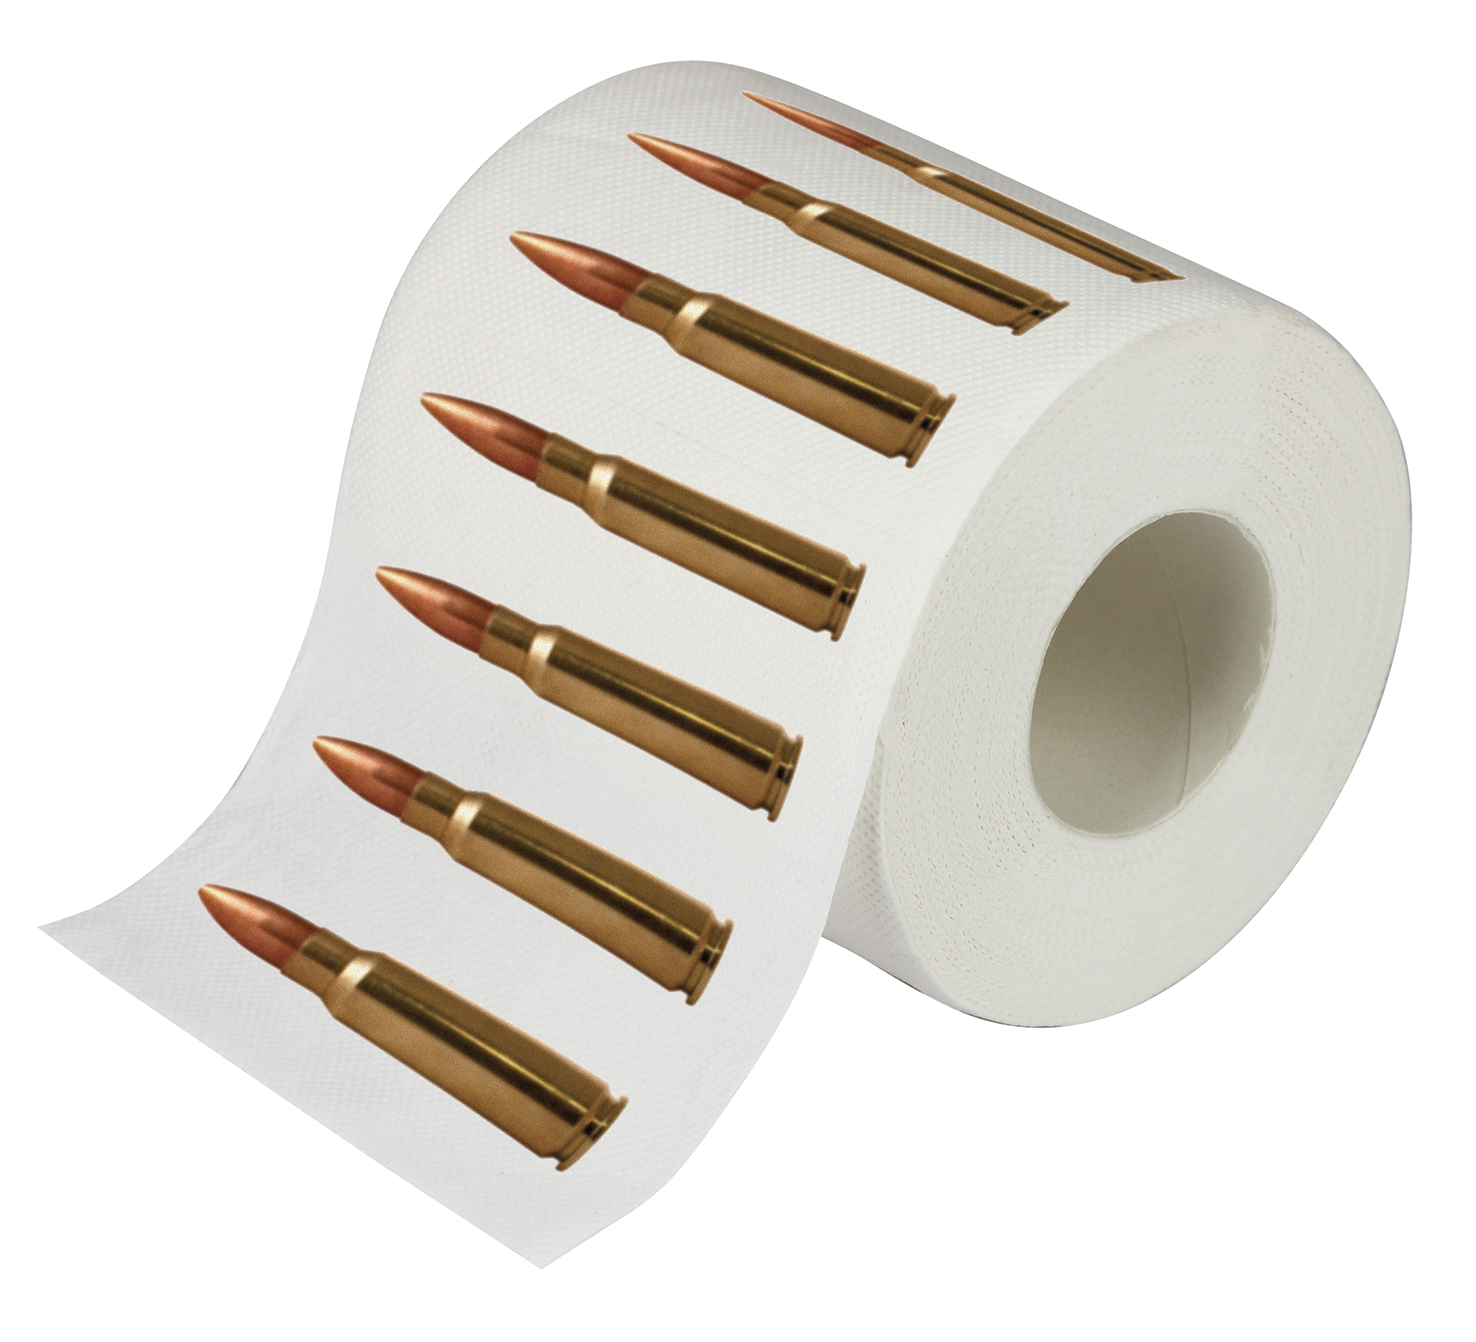 Bullet Toilet Paper
Caliber Gourmet